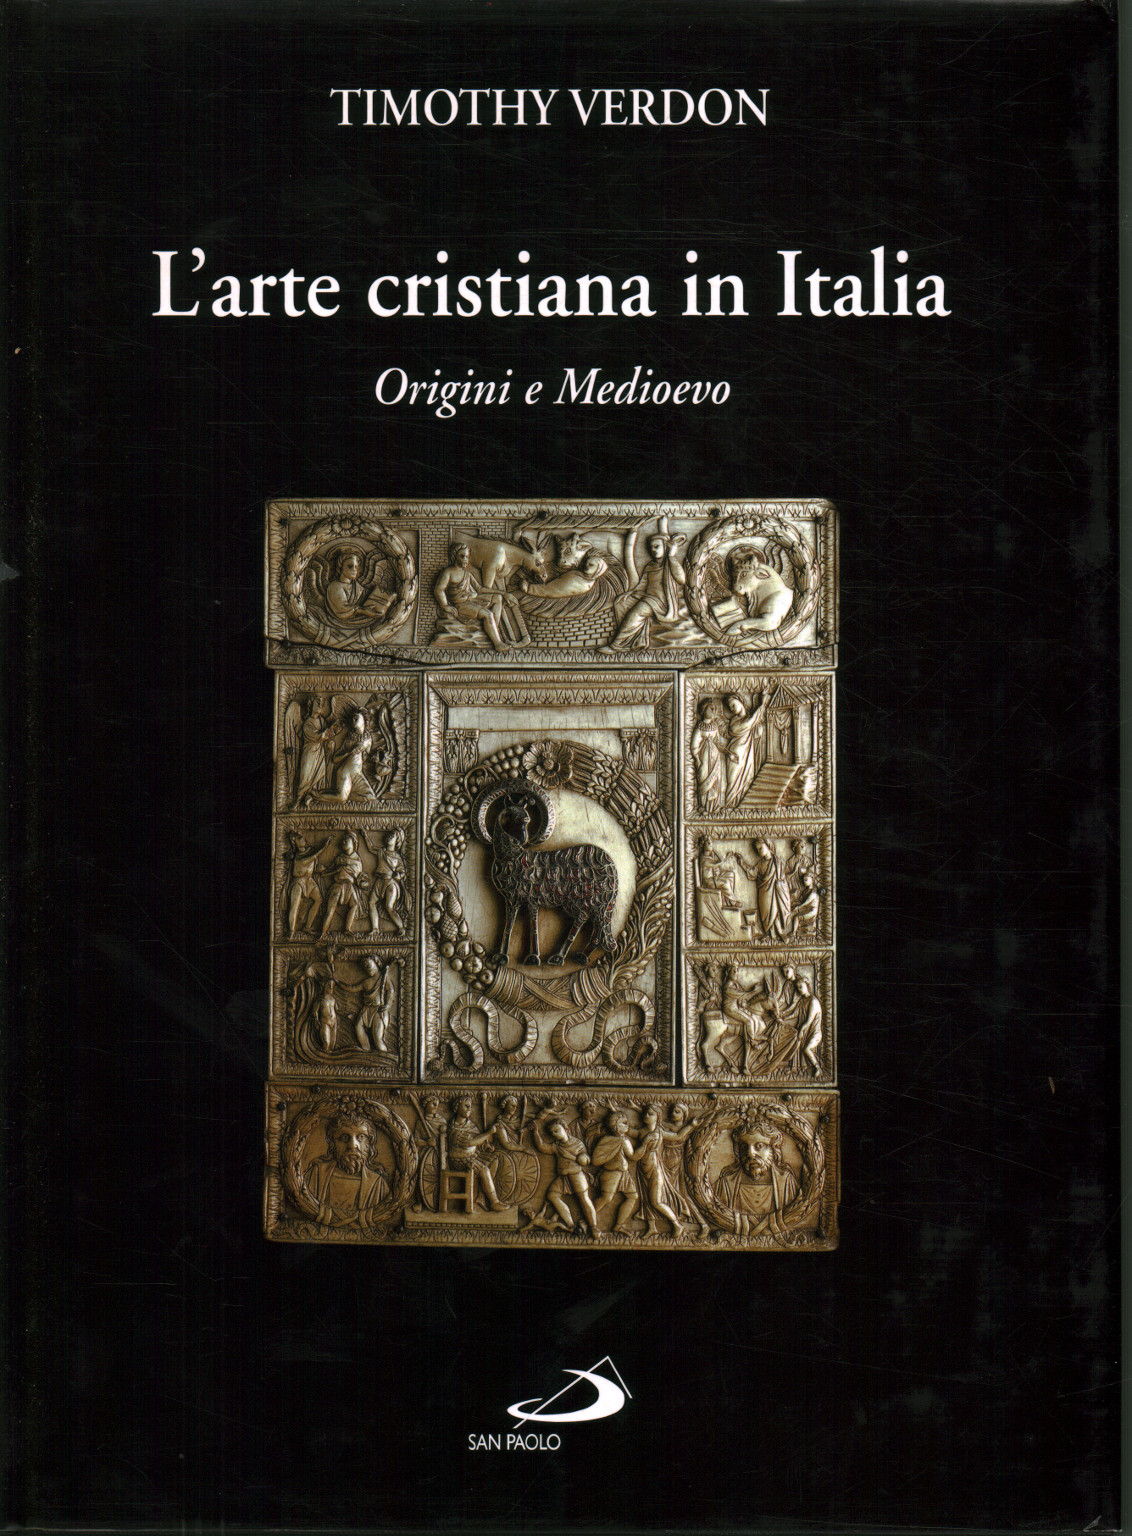 Arte cristiano en Italia (volumen 1), Timothy Verdon